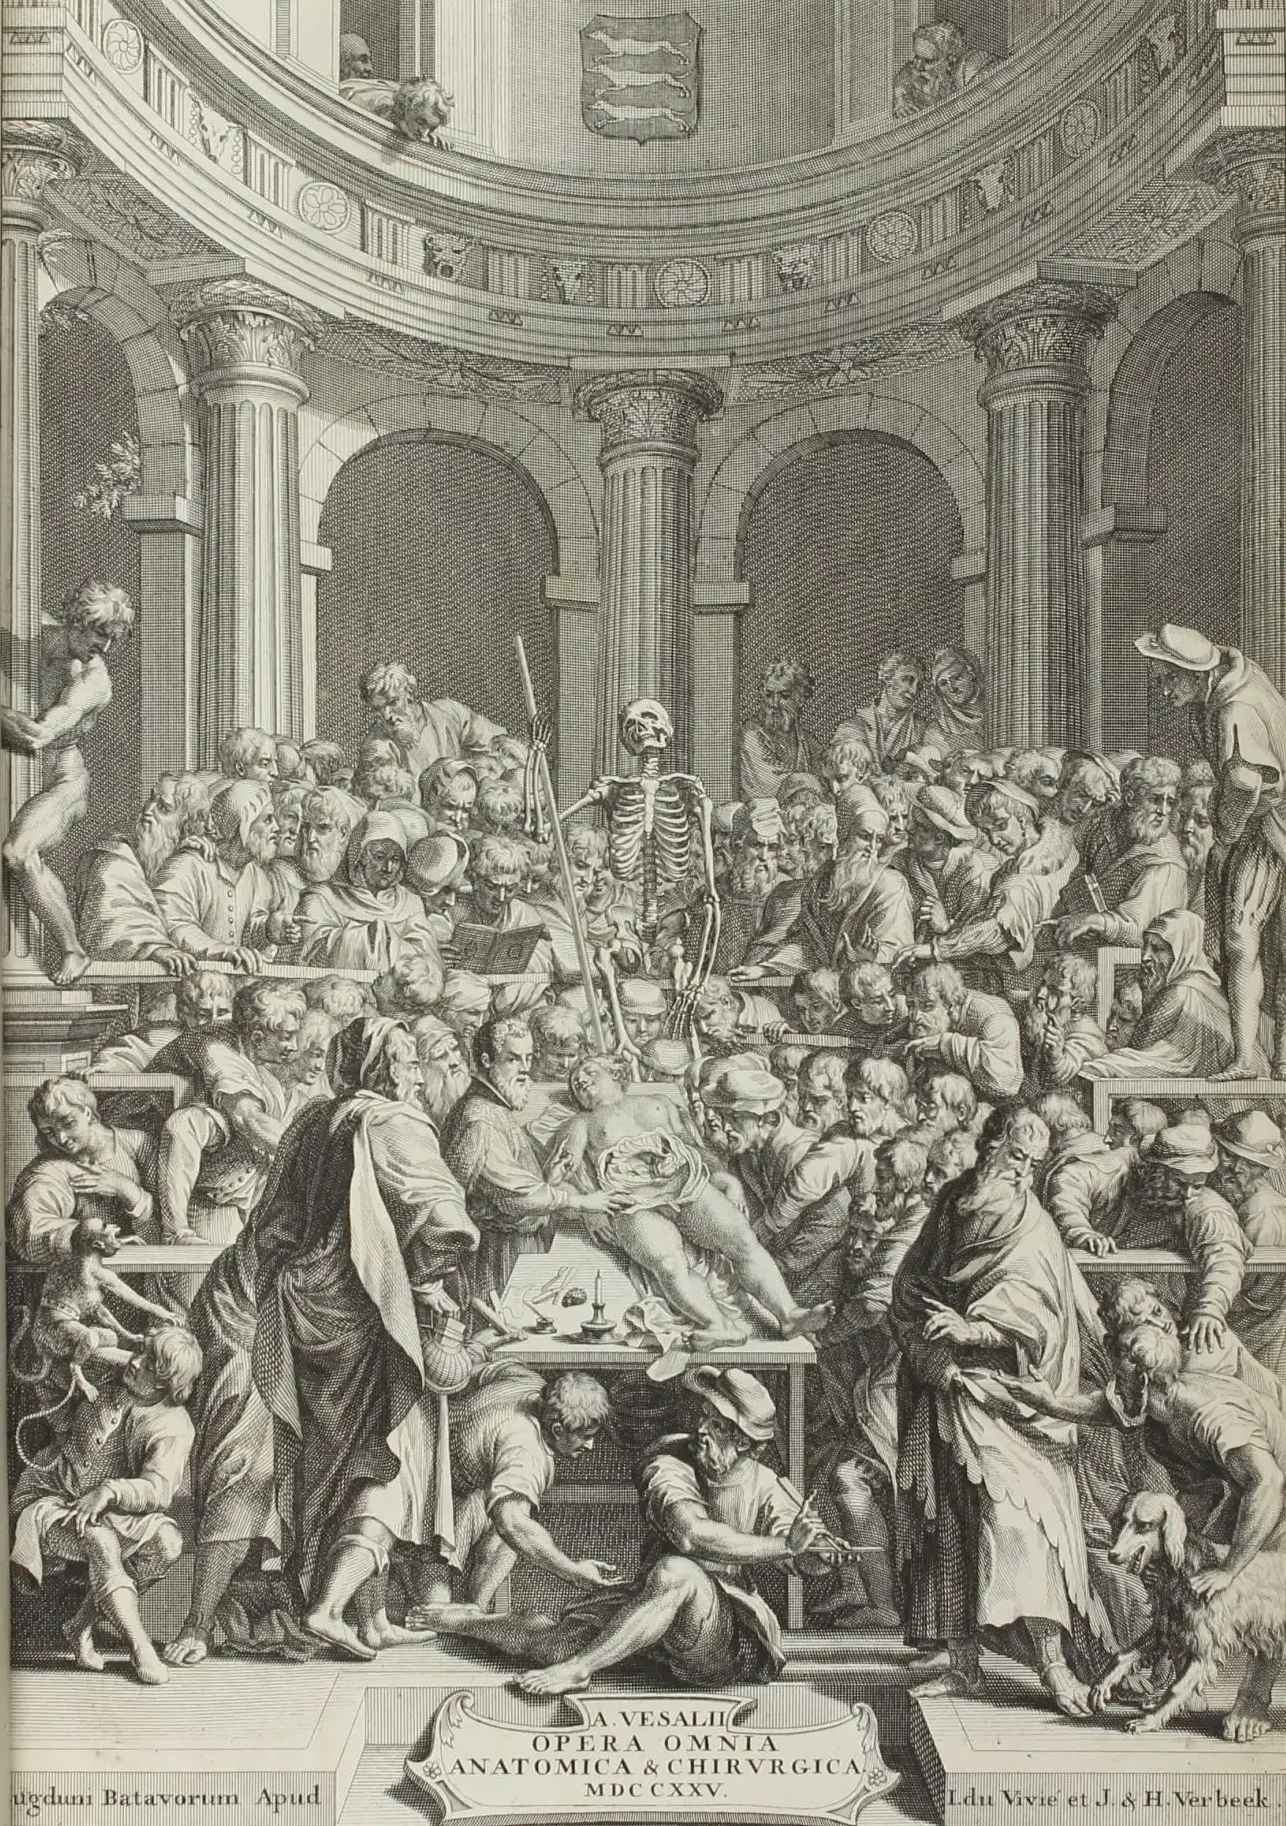 Vesalio llevó a cabo disecciones humanas públicas en Padua